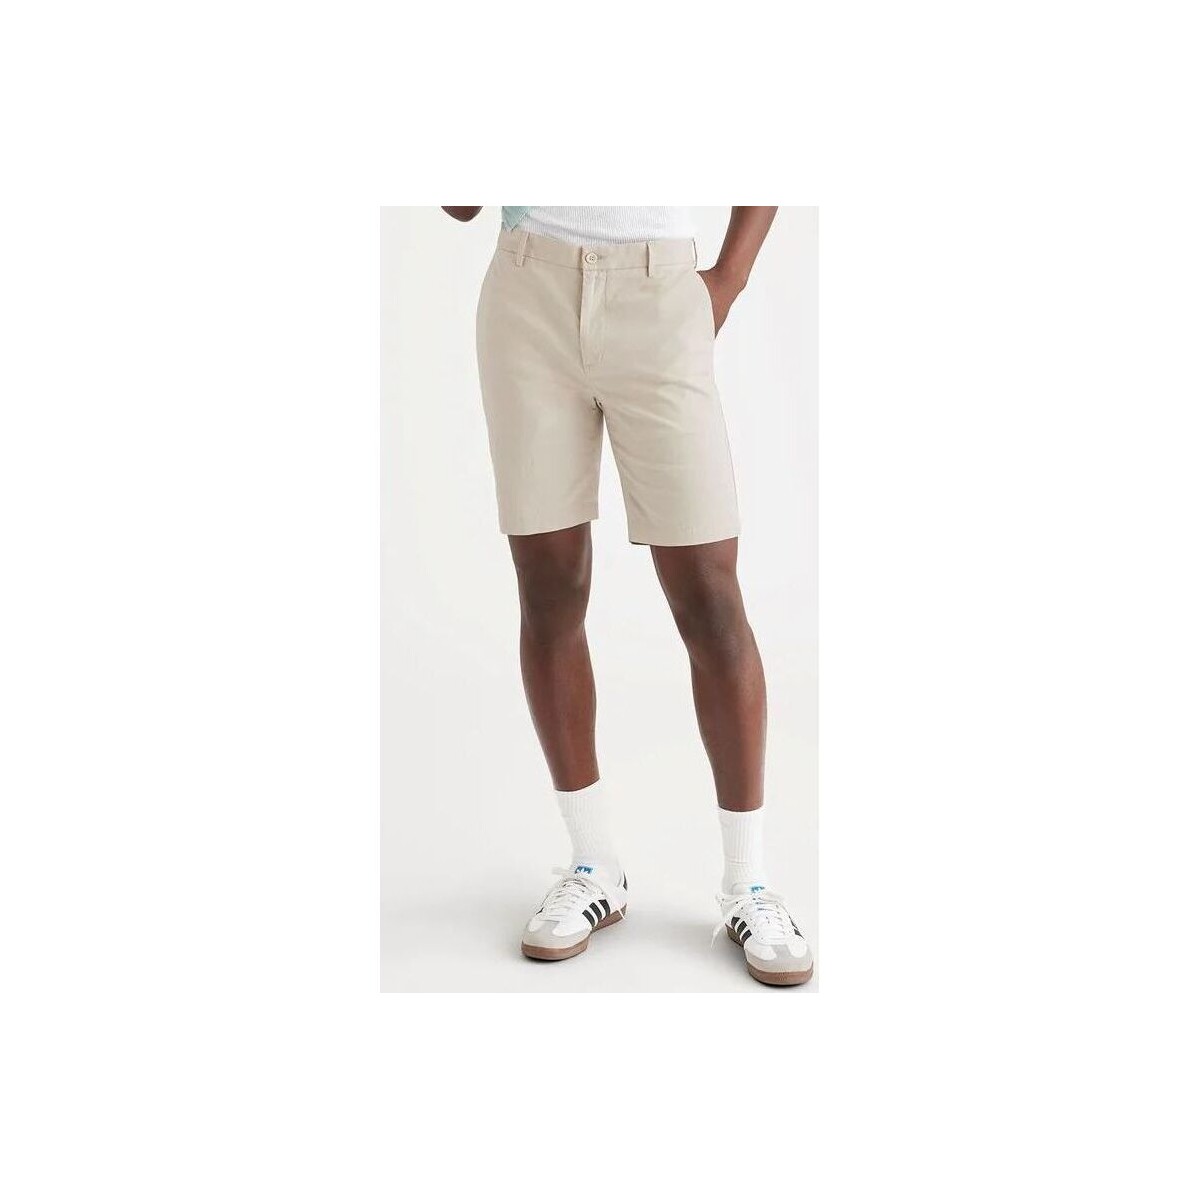 Textil Homem Shorts / Bermudas Dockers 85862 0085 CHINO SHORT-KHAKI Bege